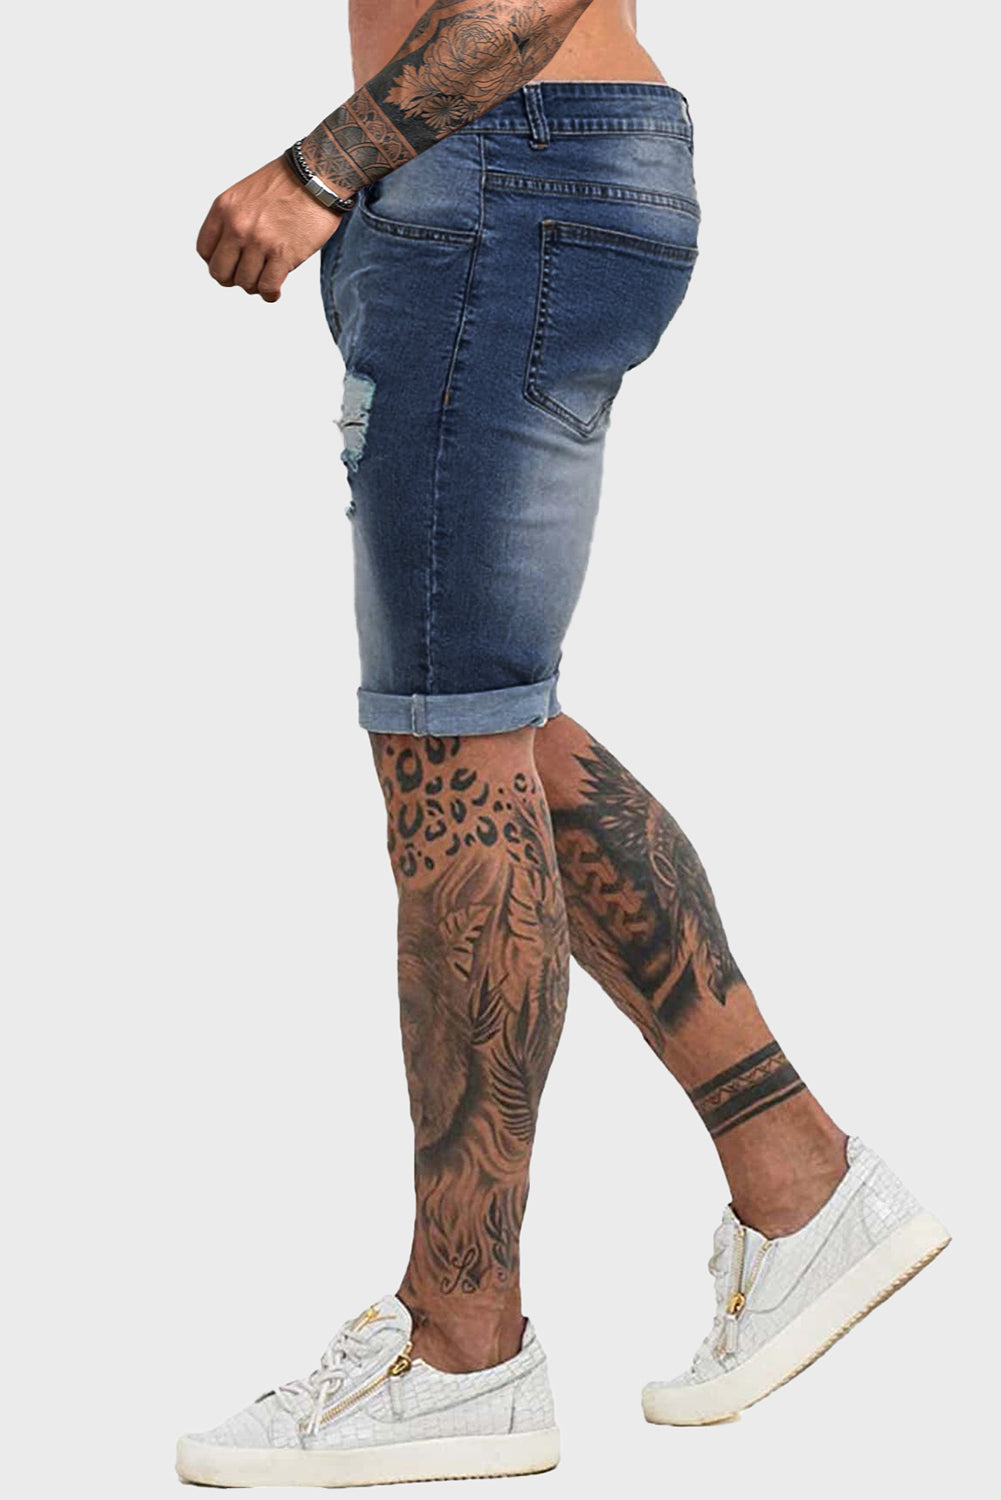 Blue Distressed Low-rise Men's Denim Shorts Men's Pants JT's Designer Fashion